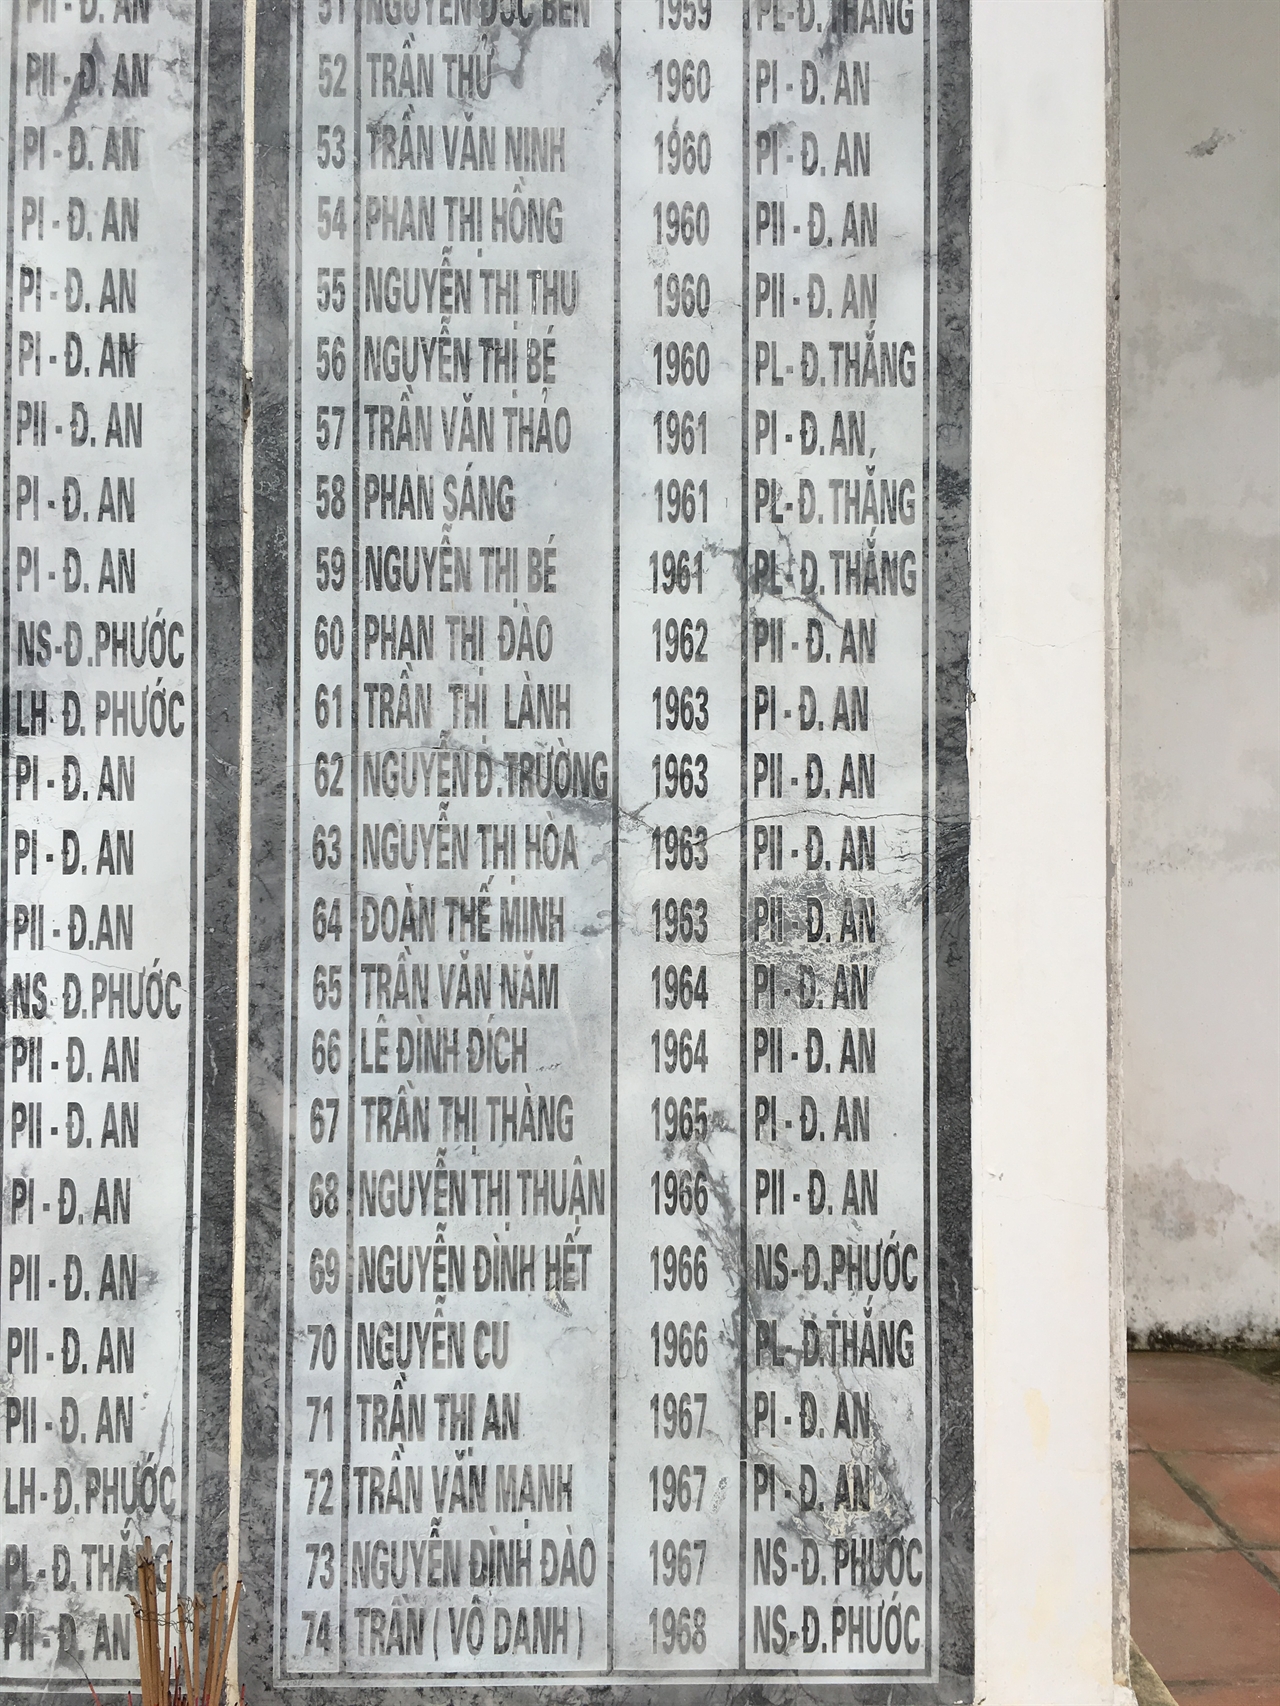 퐁니퐁넛 마을 희생자 위령비. 희생자의 출생연도를 통해 연령을 확인할 수 있다. 1968년에 발생한 이 학살에 68년생인 아이부터 상당수의 어린이들이 희생된 것을 확인할 수 있다.